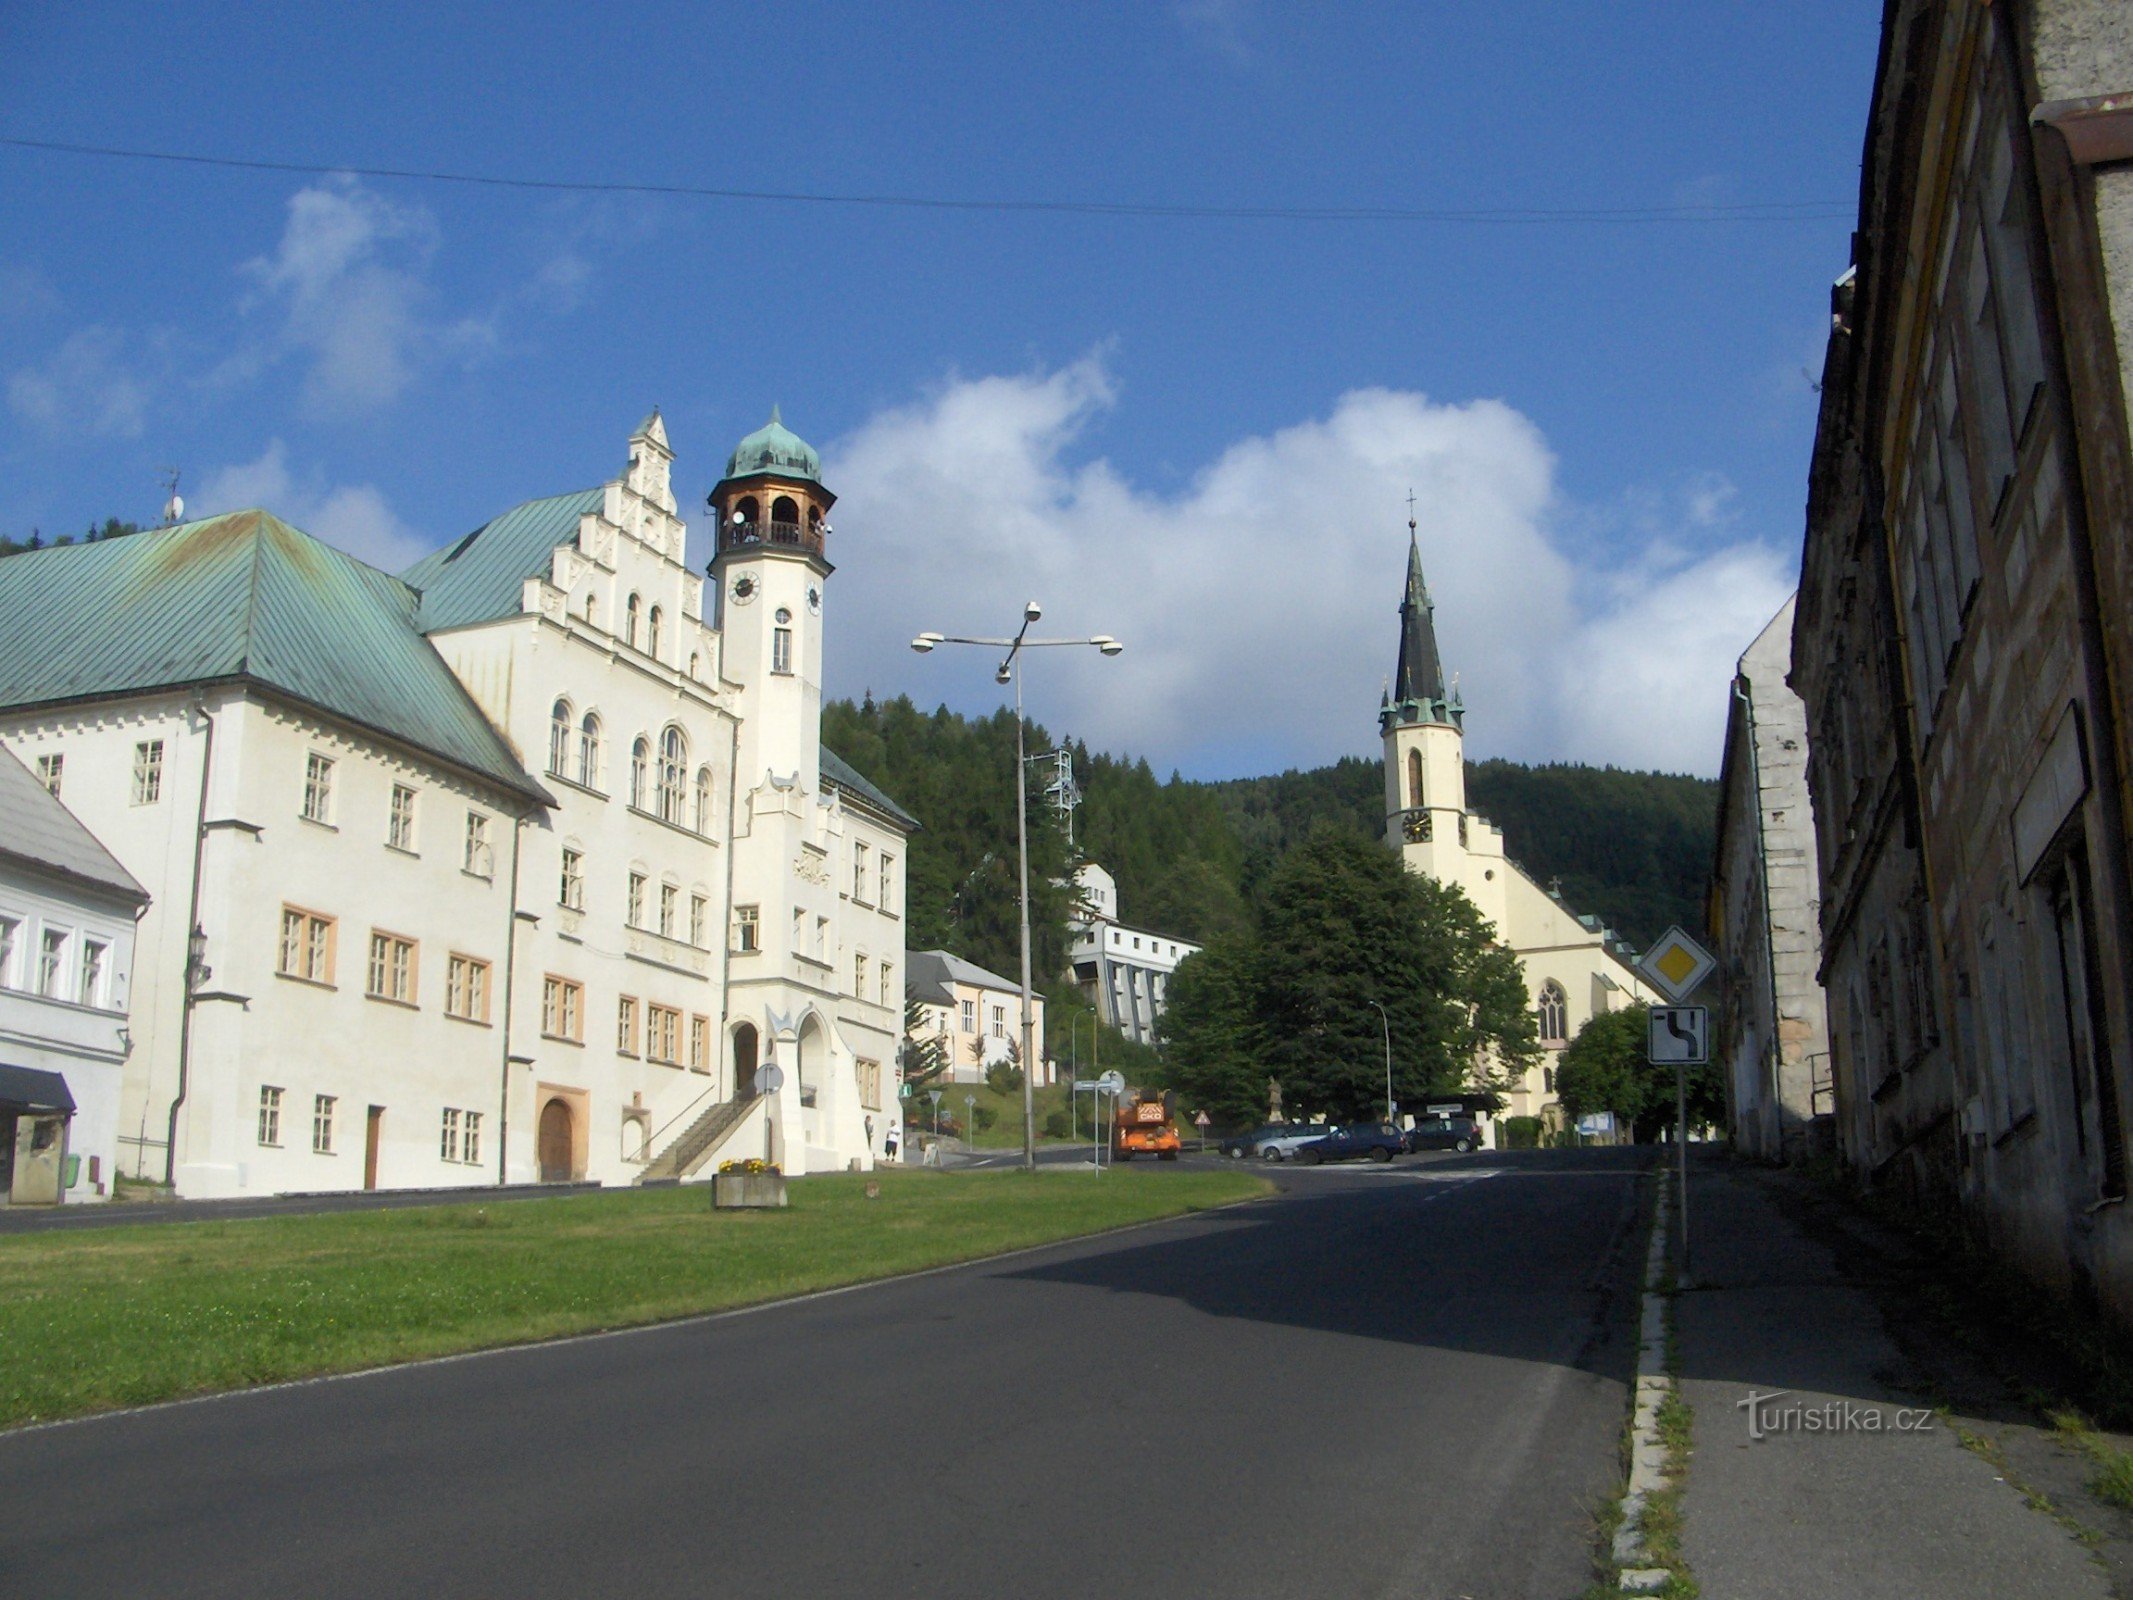 A Câmara Municipal e a Igreja de S. JáchymGenericName